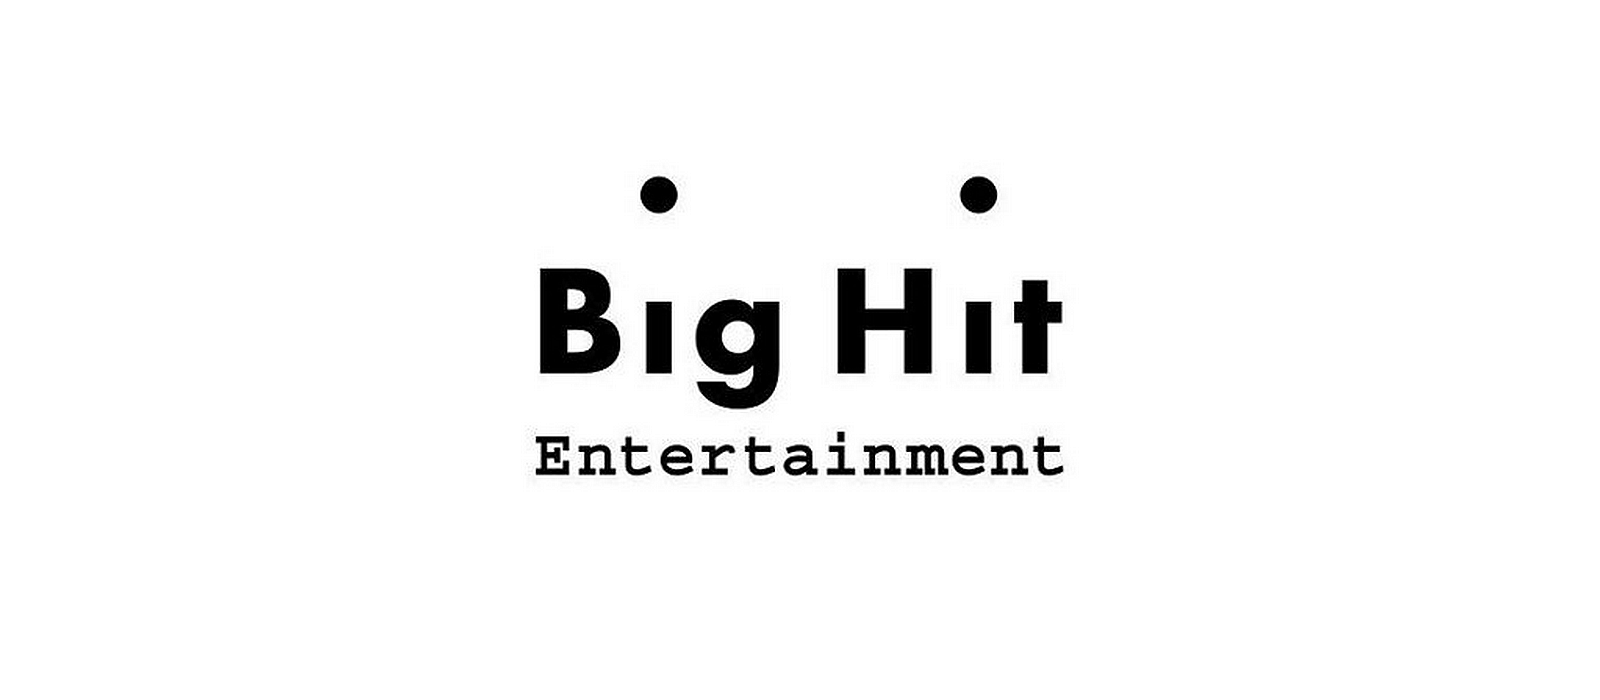 Big Hit логотип. Пледис Интертеймент. Биг хит Интертеймент. Big Hit Entertainment pledis Entertainment logo. Соус биг хит